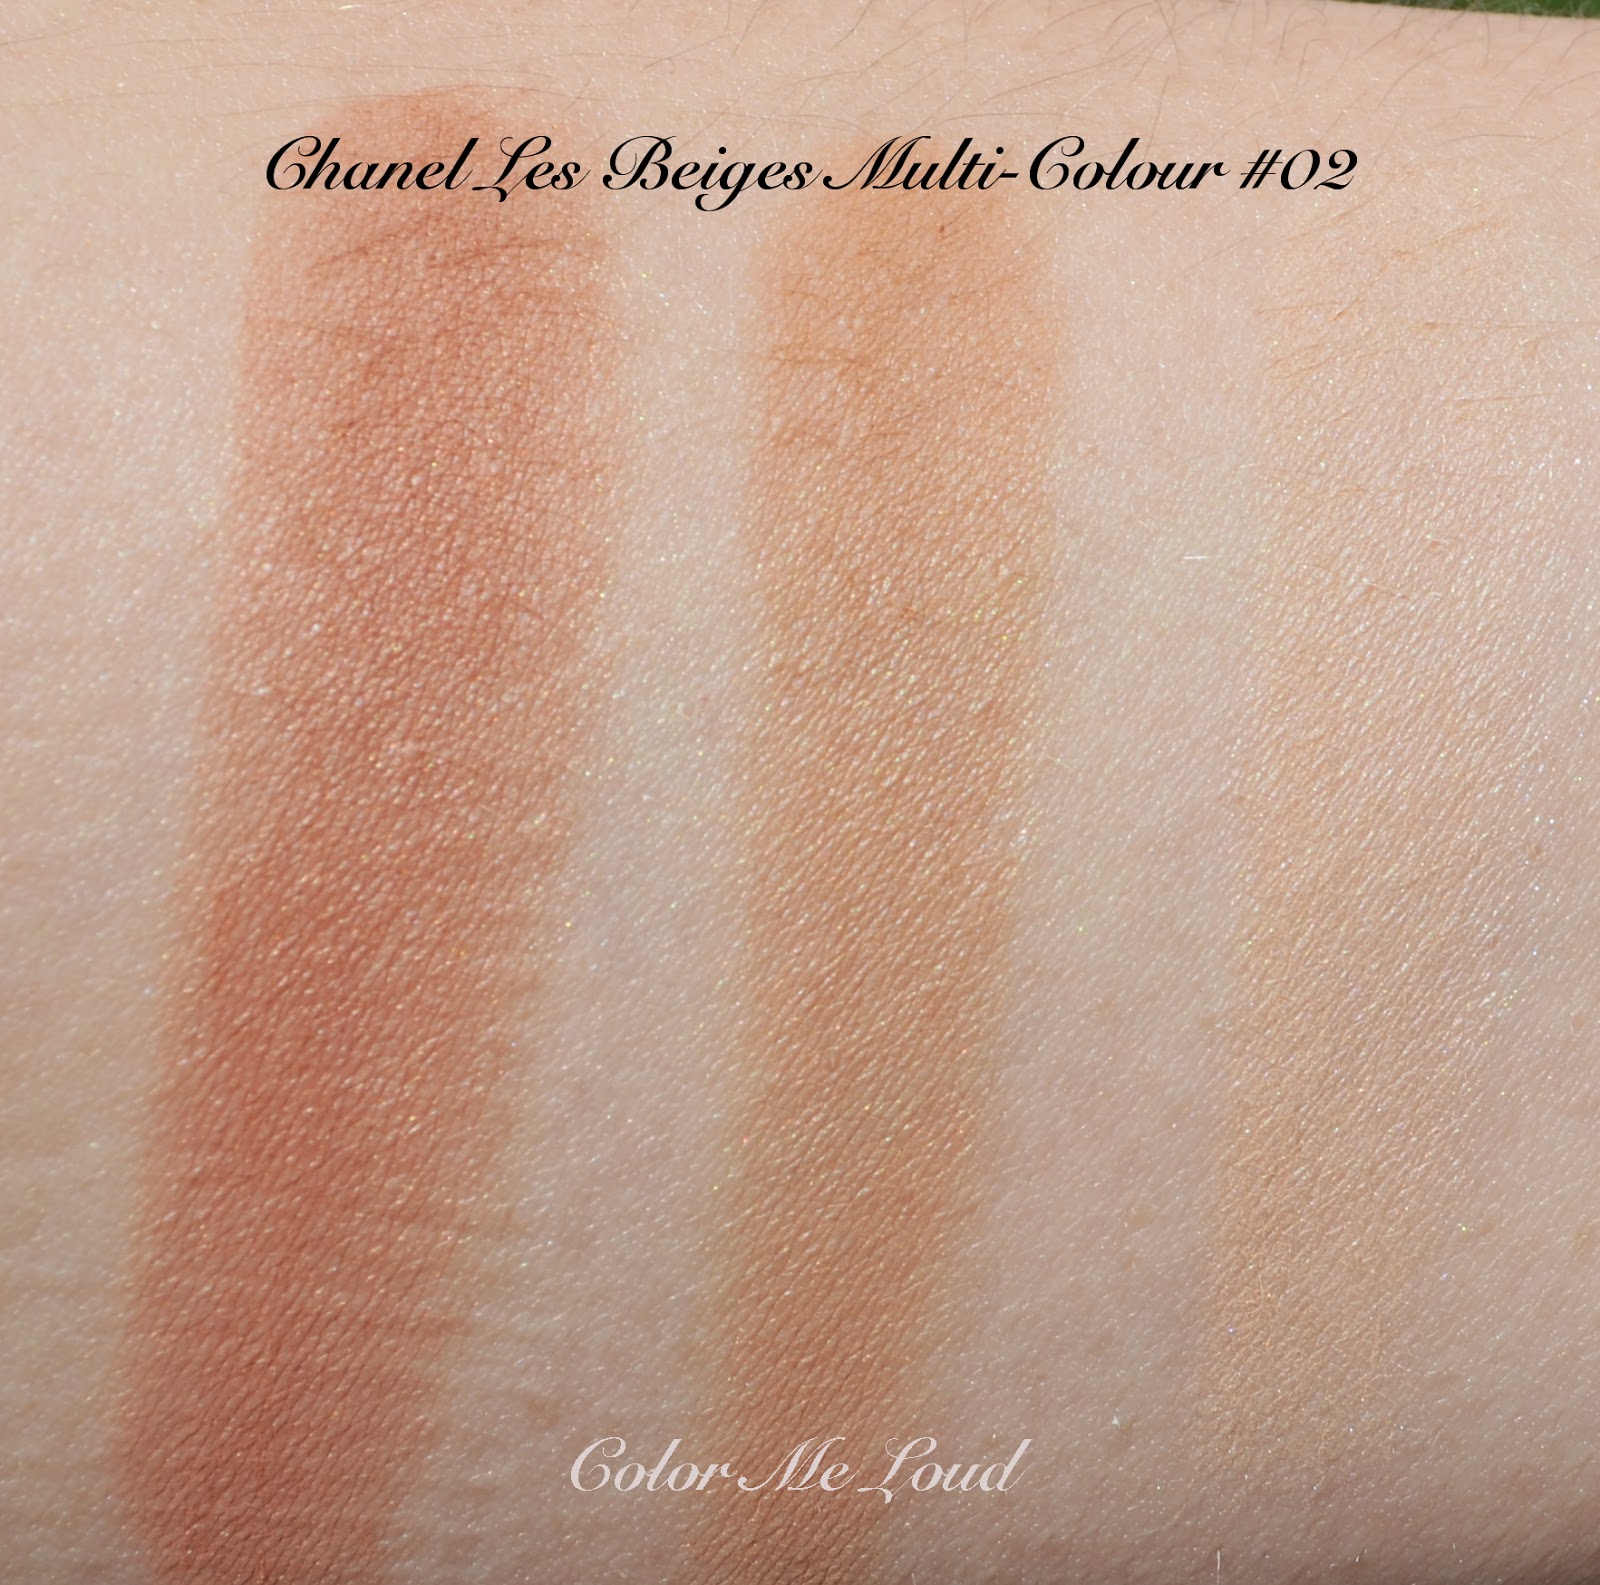 Chanel Les Beiges Healthy Glow Multi-Colour Powder #01 & #02